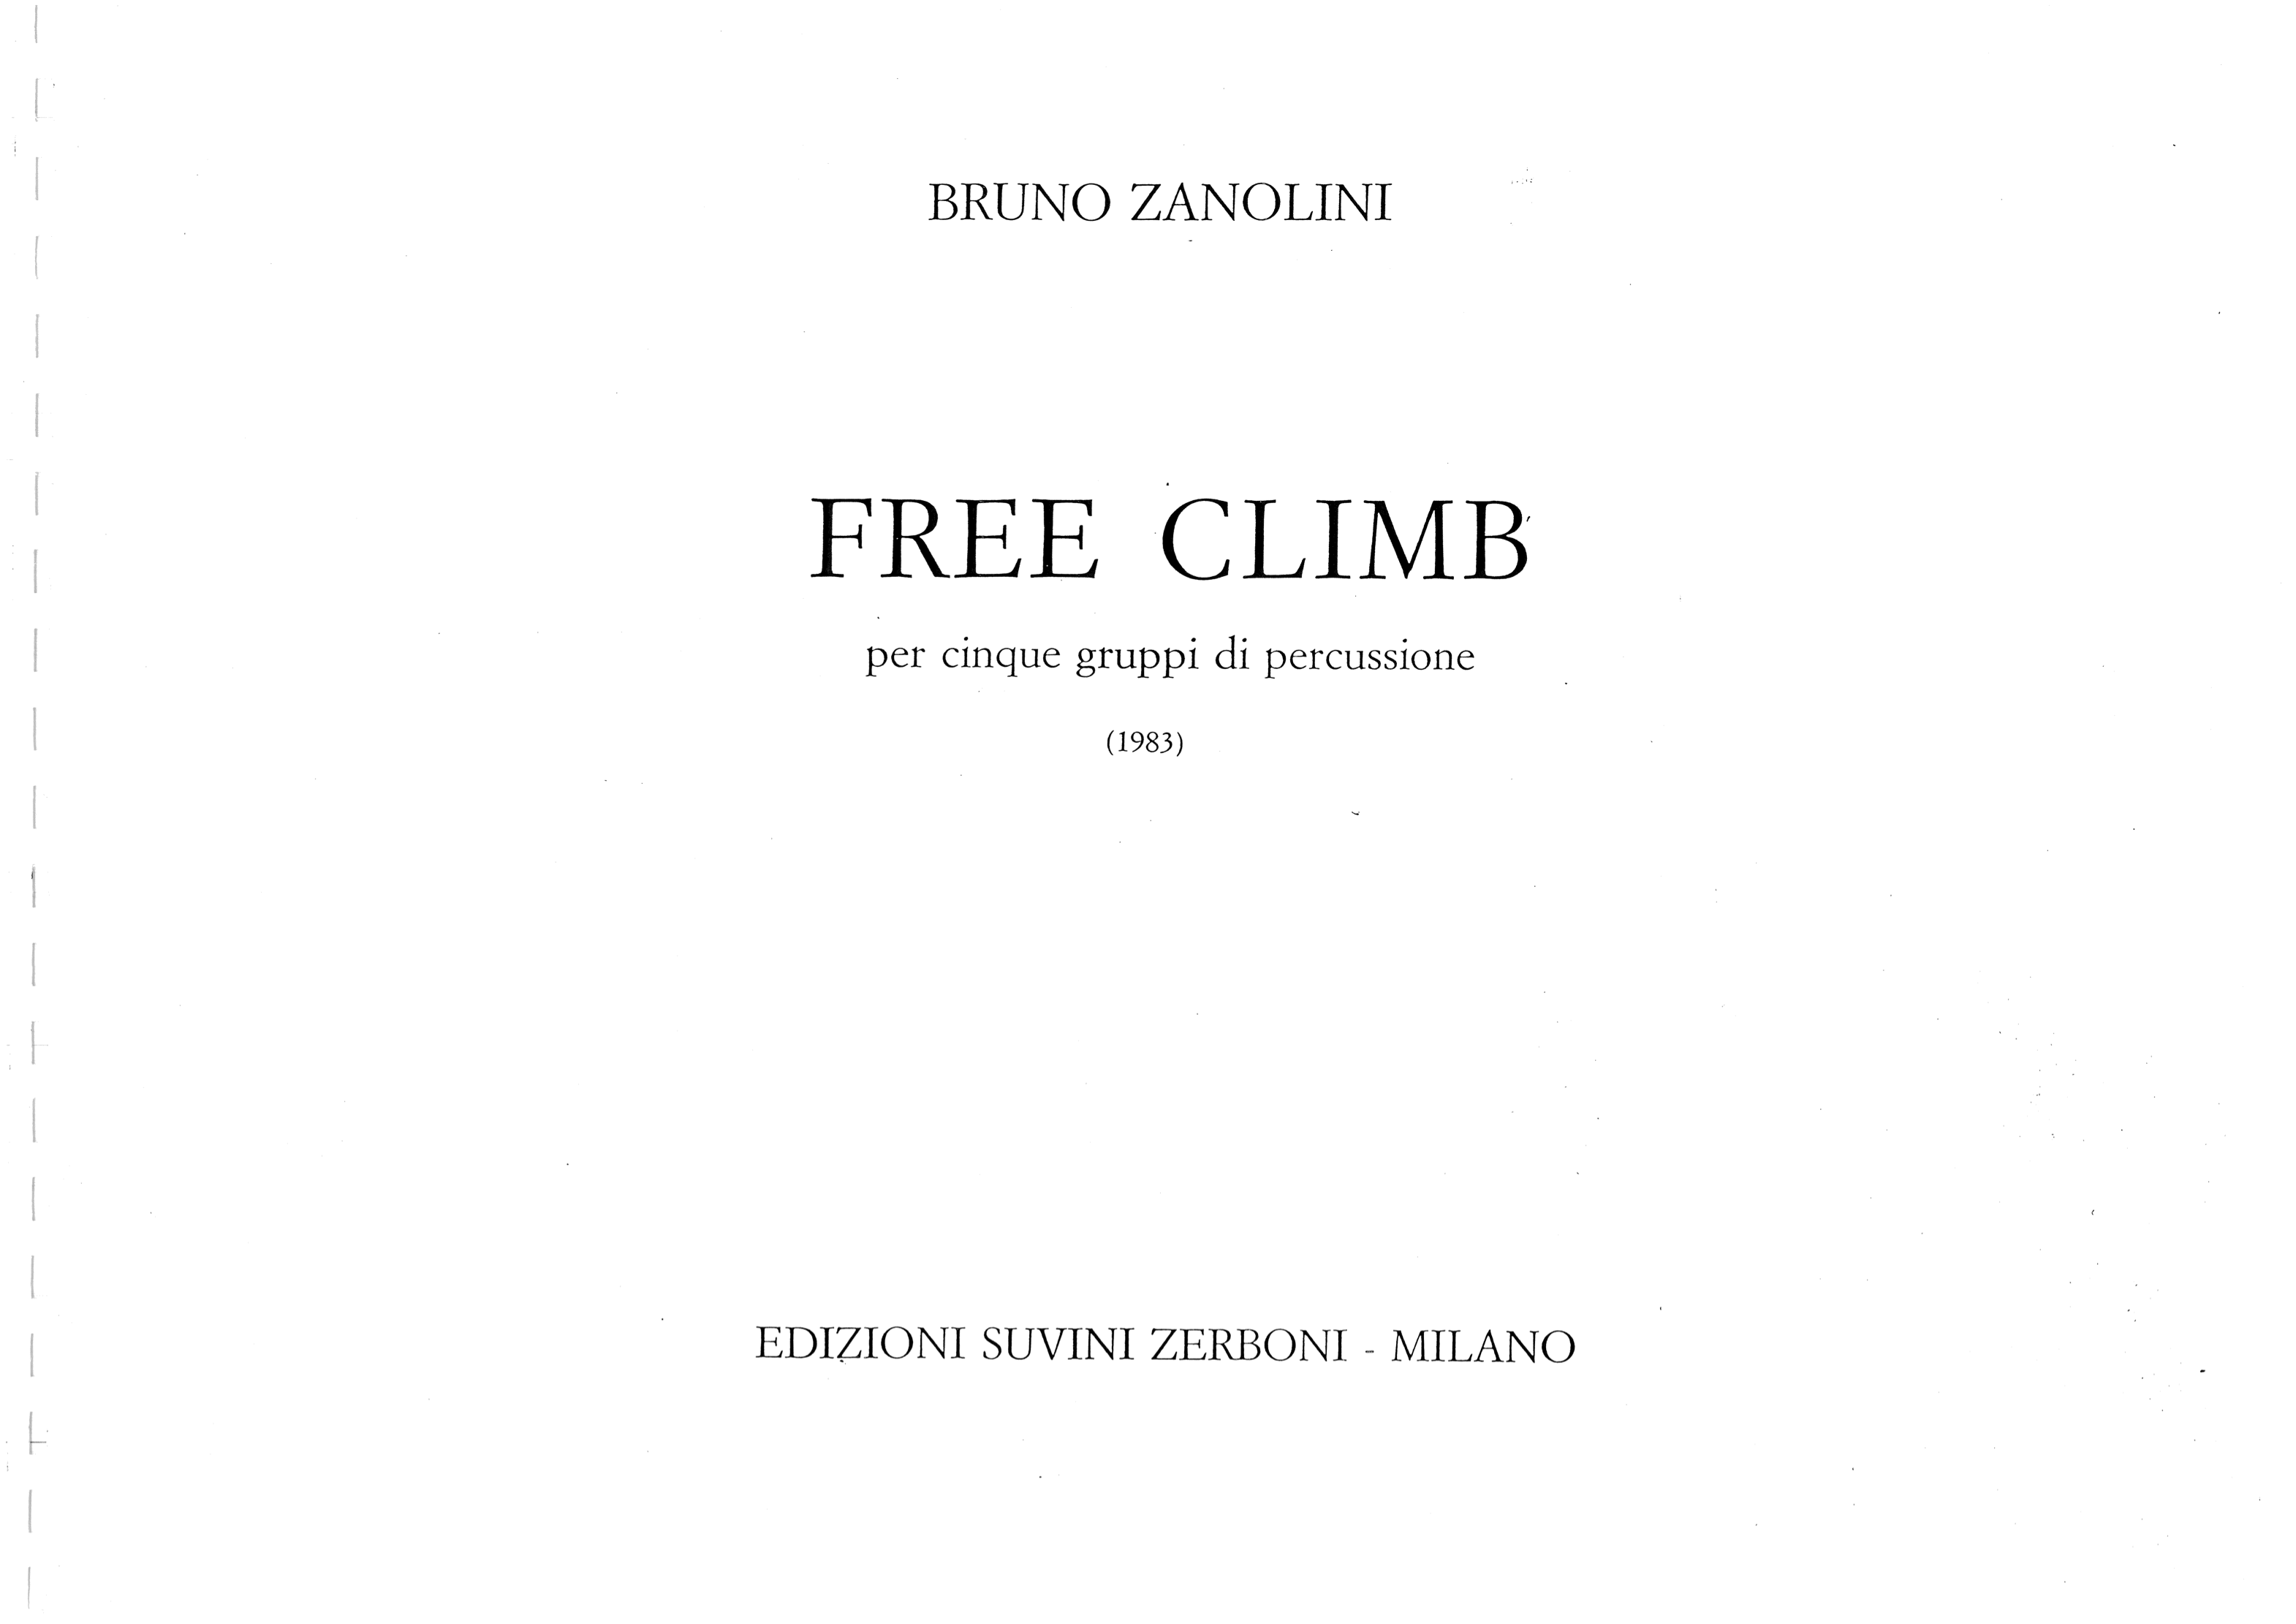 Free climb_Zanolini 1